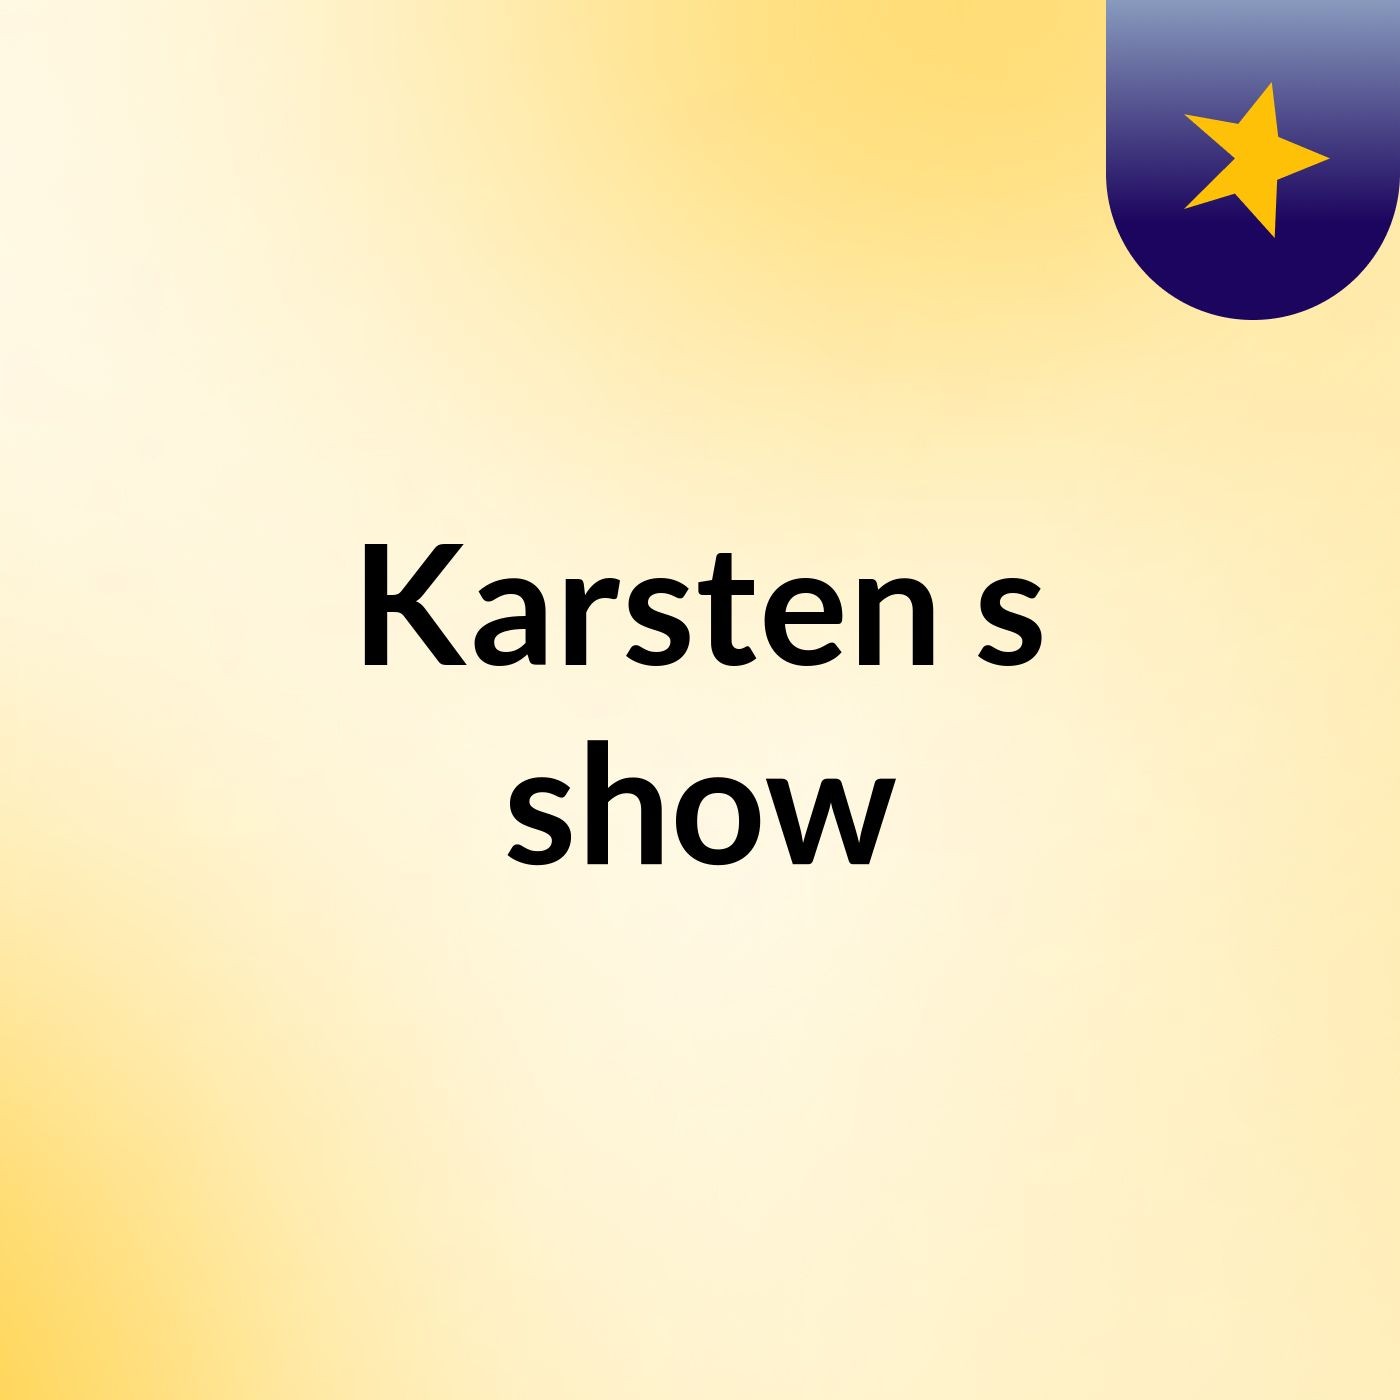 Karsten's show